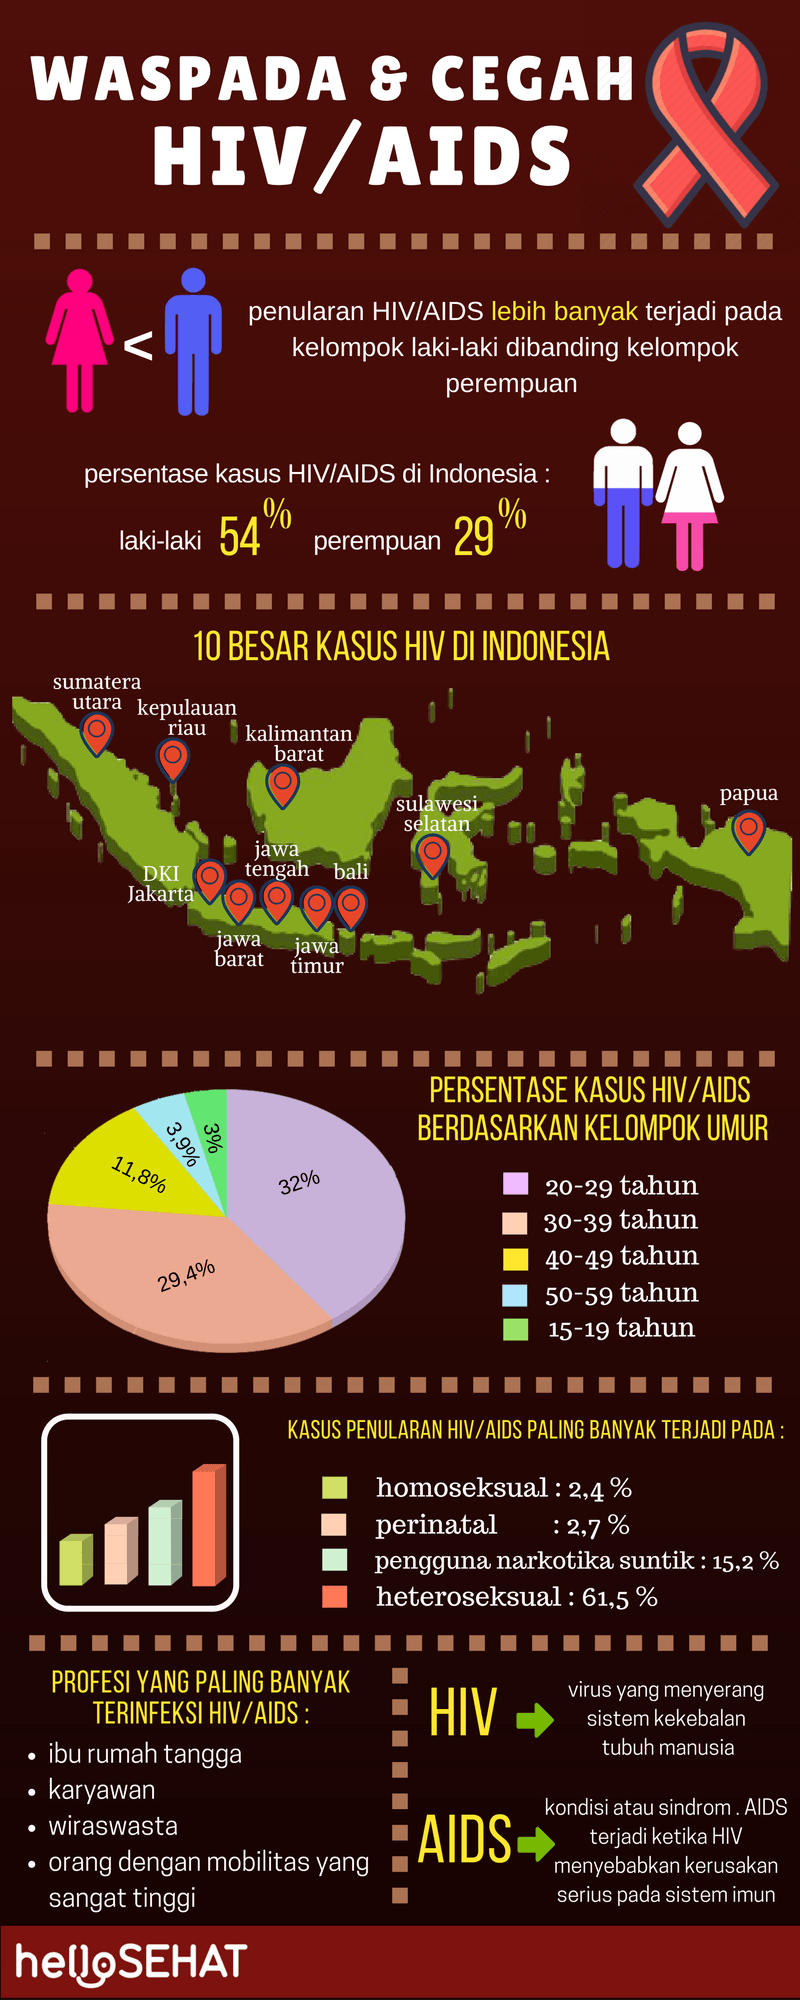 ahoj zdravé hiv pomáha infographic v indonézii